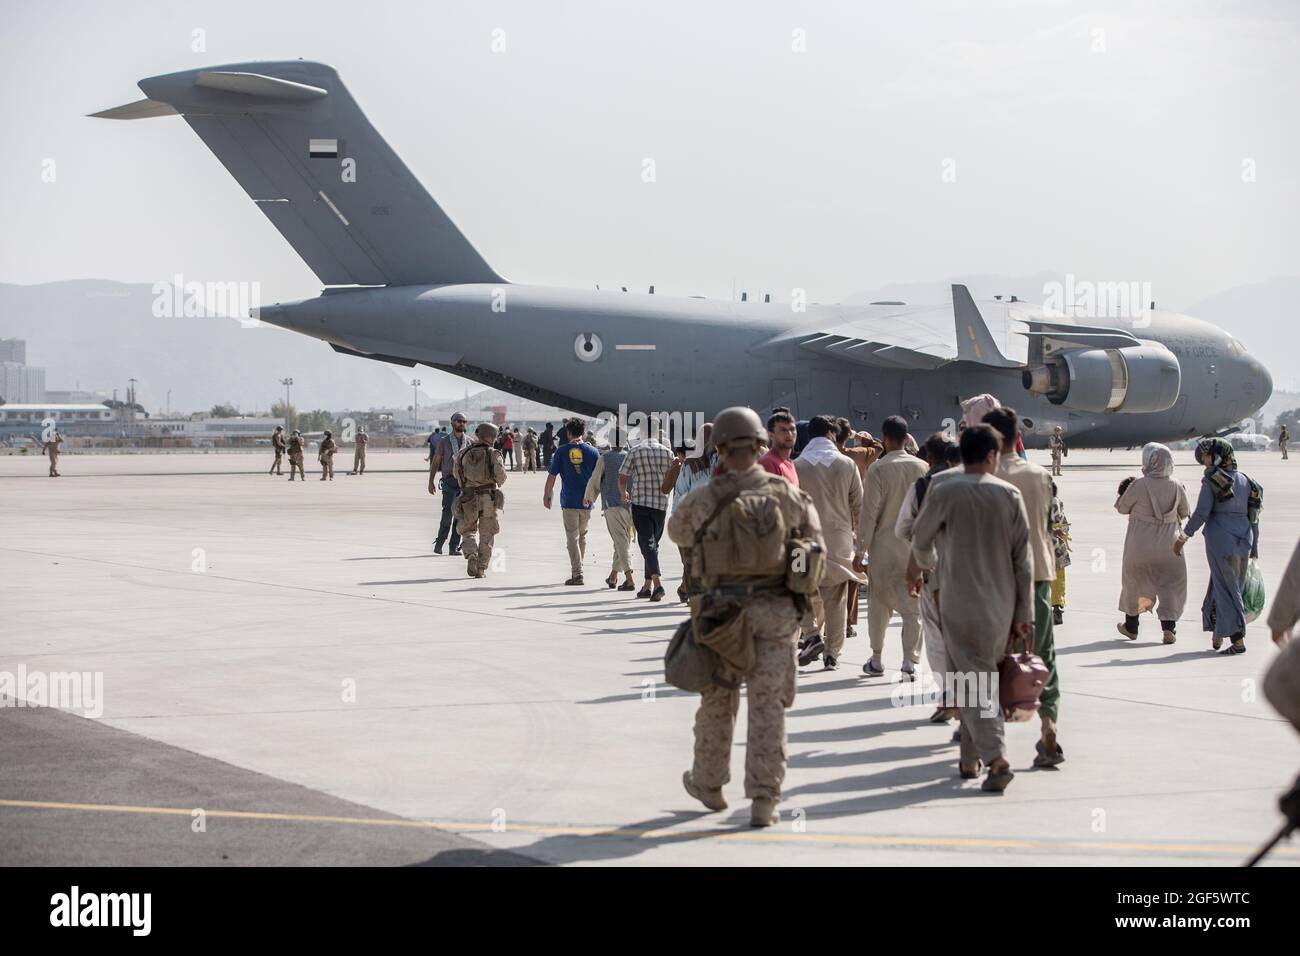 Los evacuados se cargan en un Boeing C-17 Globemaster III de la Fuerza Aérea de los Estados Unidos durante una evacuación en el Aeropuerto Internacional Hamid Karzai, Kabul, Afganistán, 21 de agosto de 2021. Los miembros del servicio de Estados Unidos están ayudando al Departamento de Estado con una reducción ordenada del personal designado en Afganistán. Crédito obligatorio: Samuel Ruiz/US Marine Corps vía CNP/MediaPunch Foto de stock